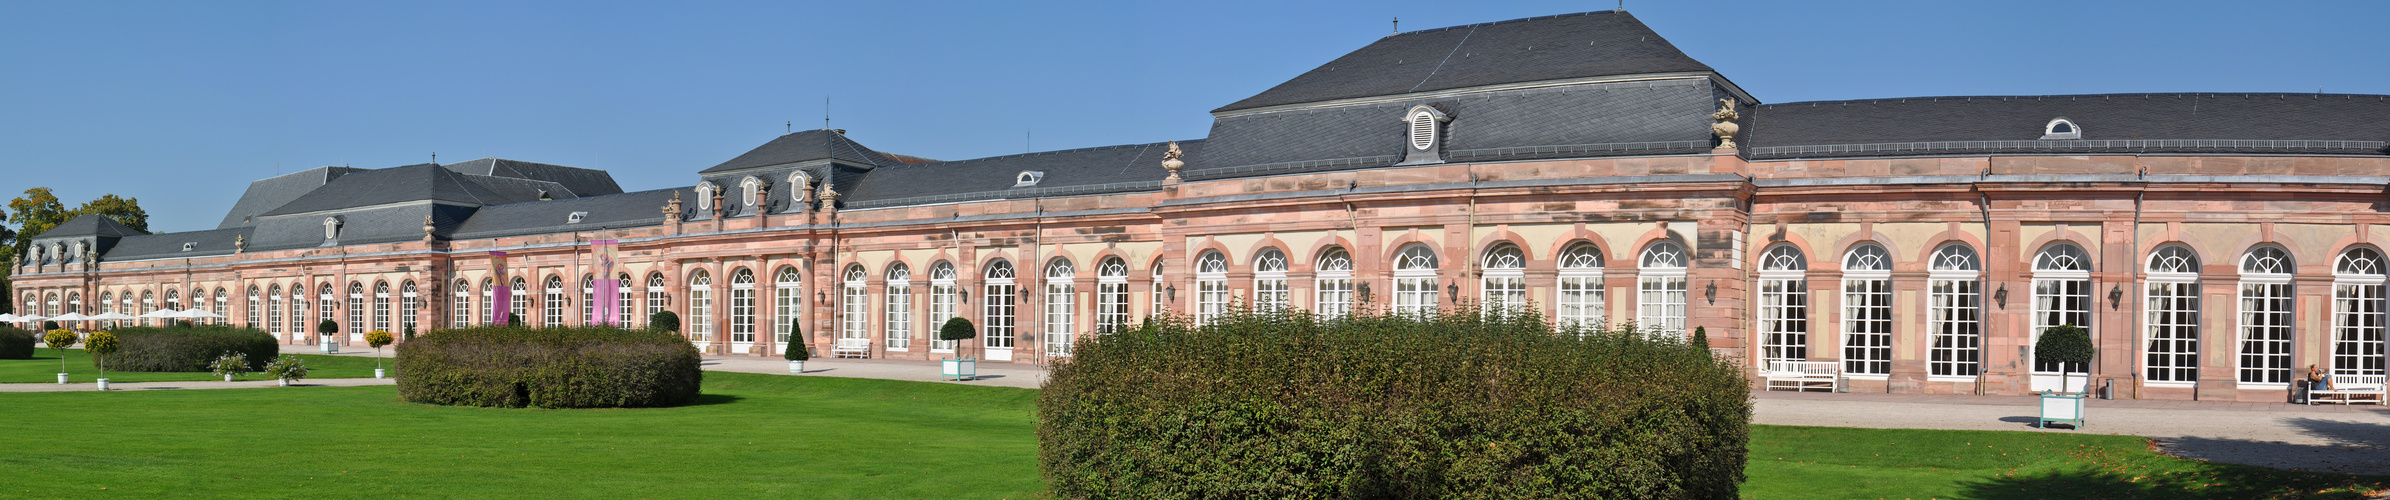 Schwetzinger Schloss